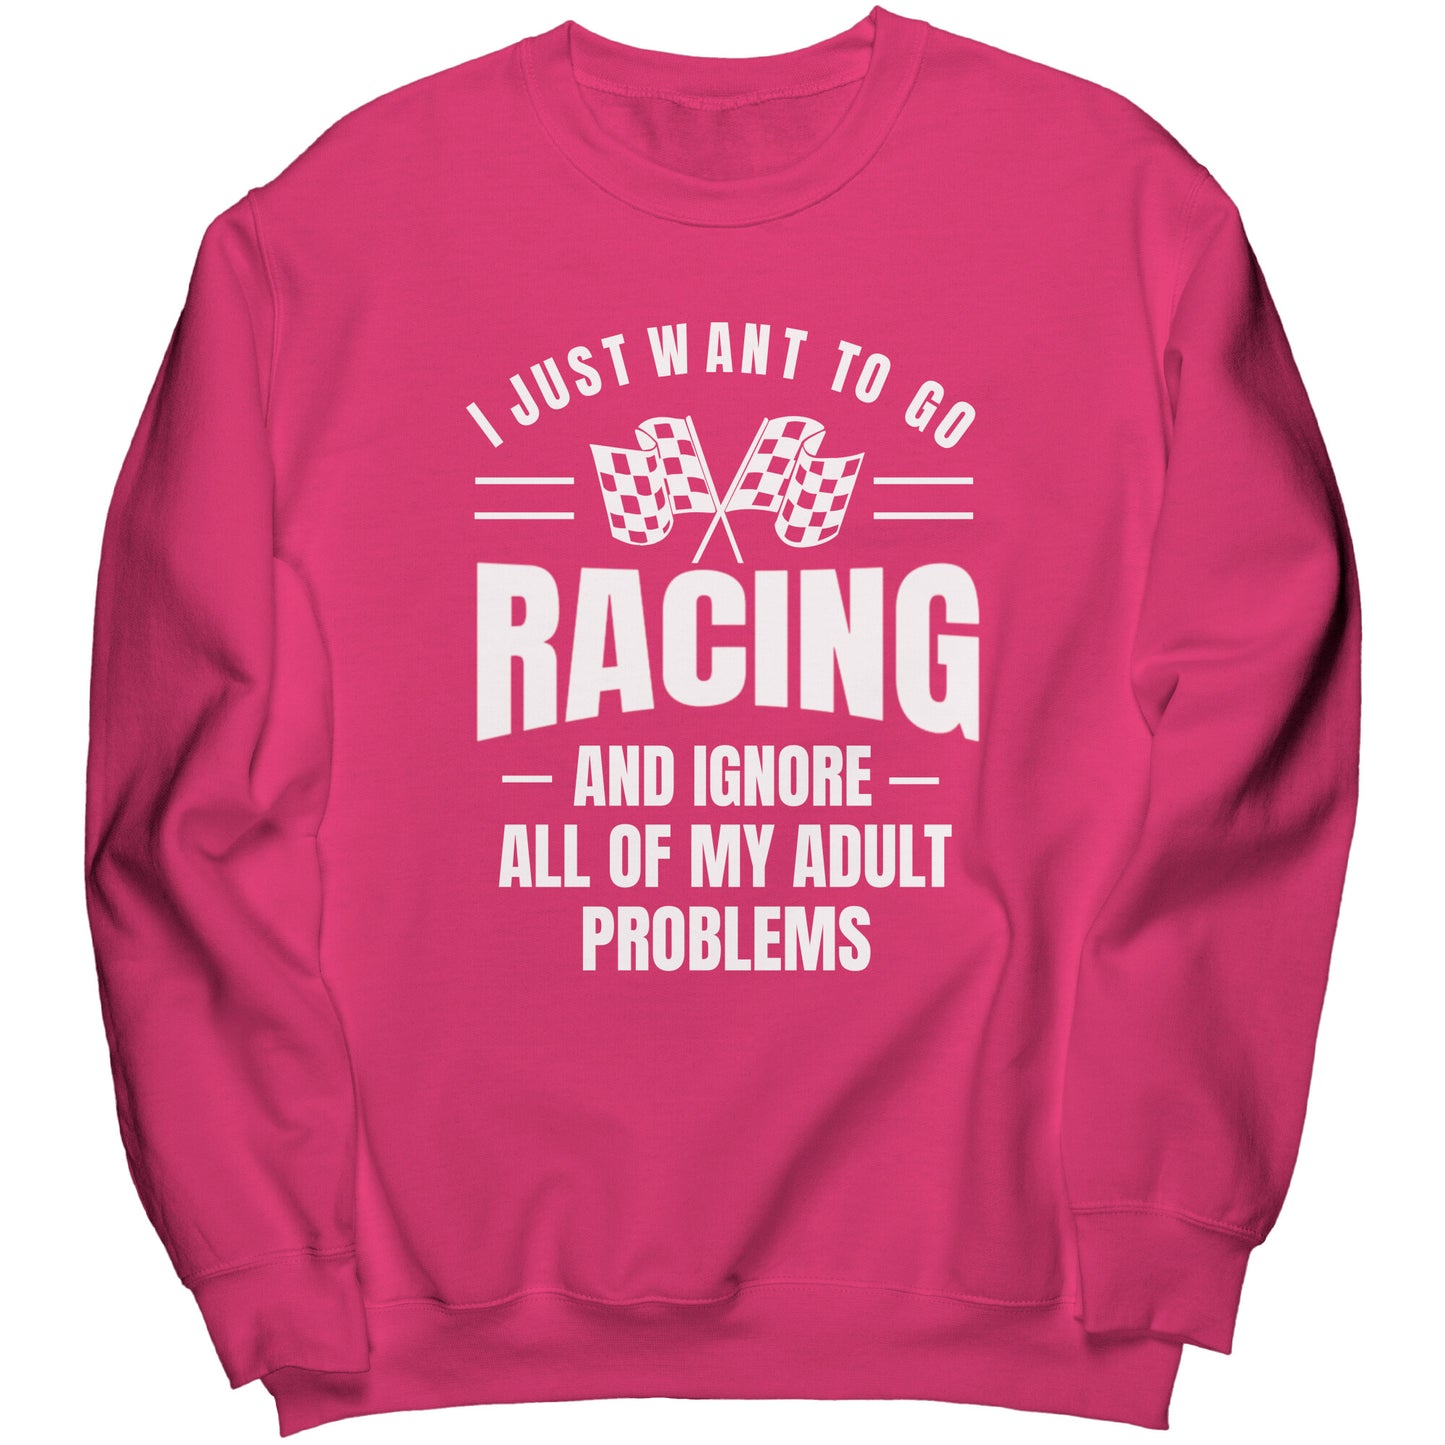 I Want To Go Racing Sweatshirt